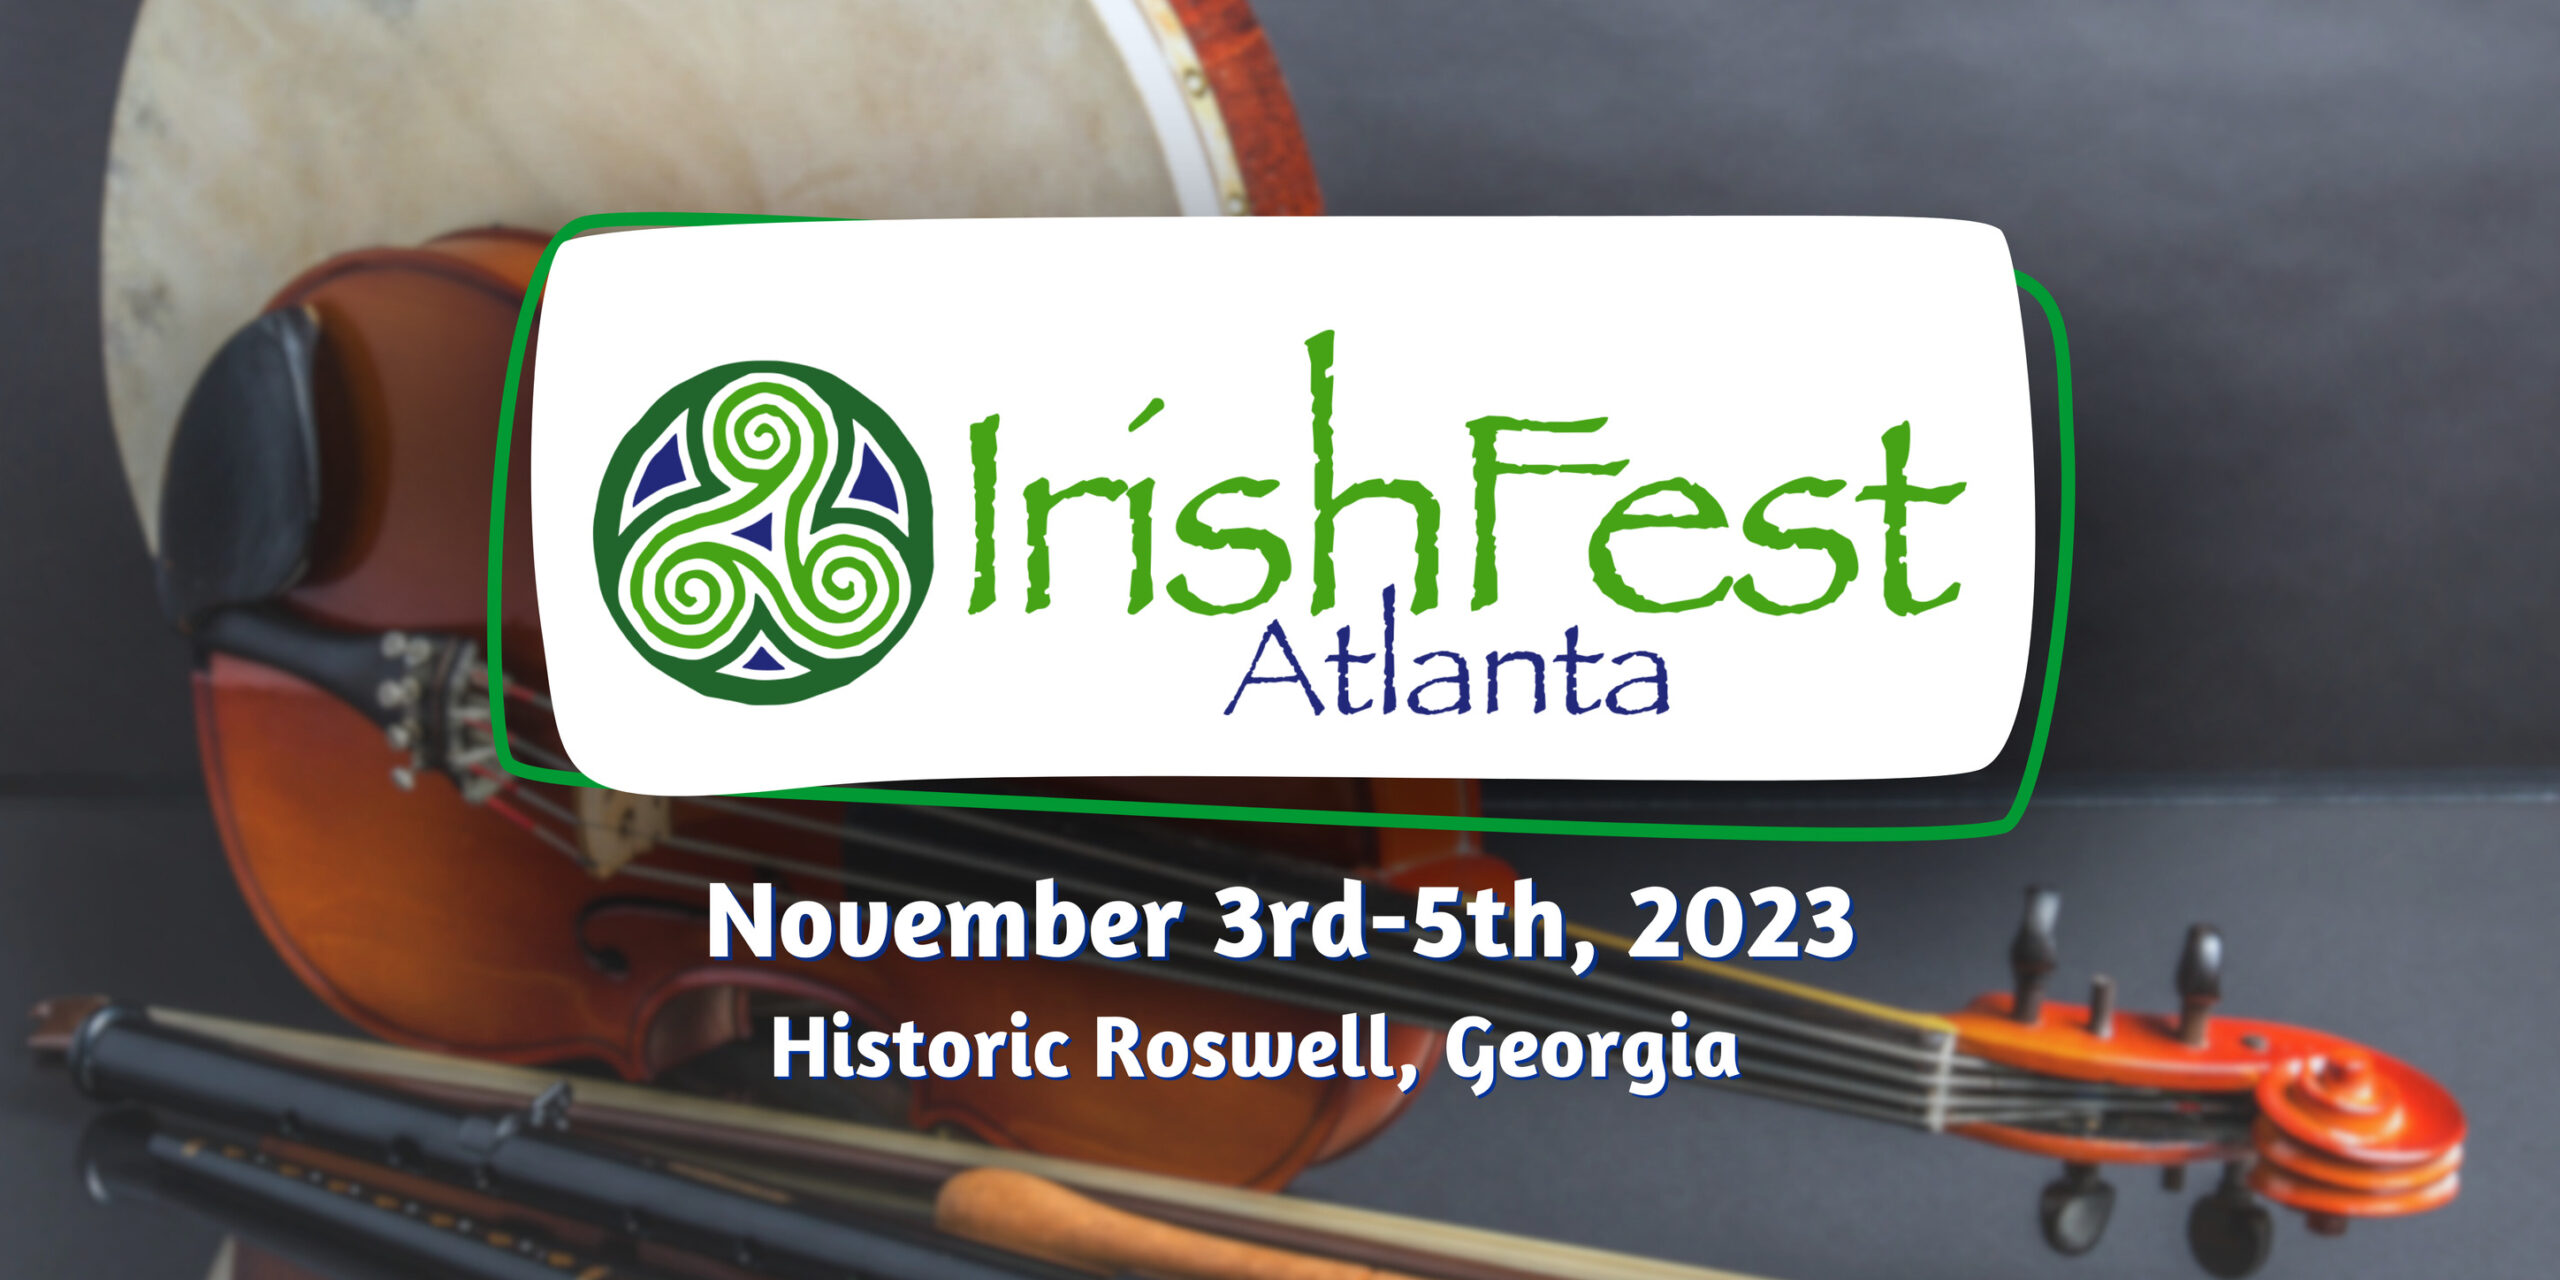 IrishFest Atlanta 